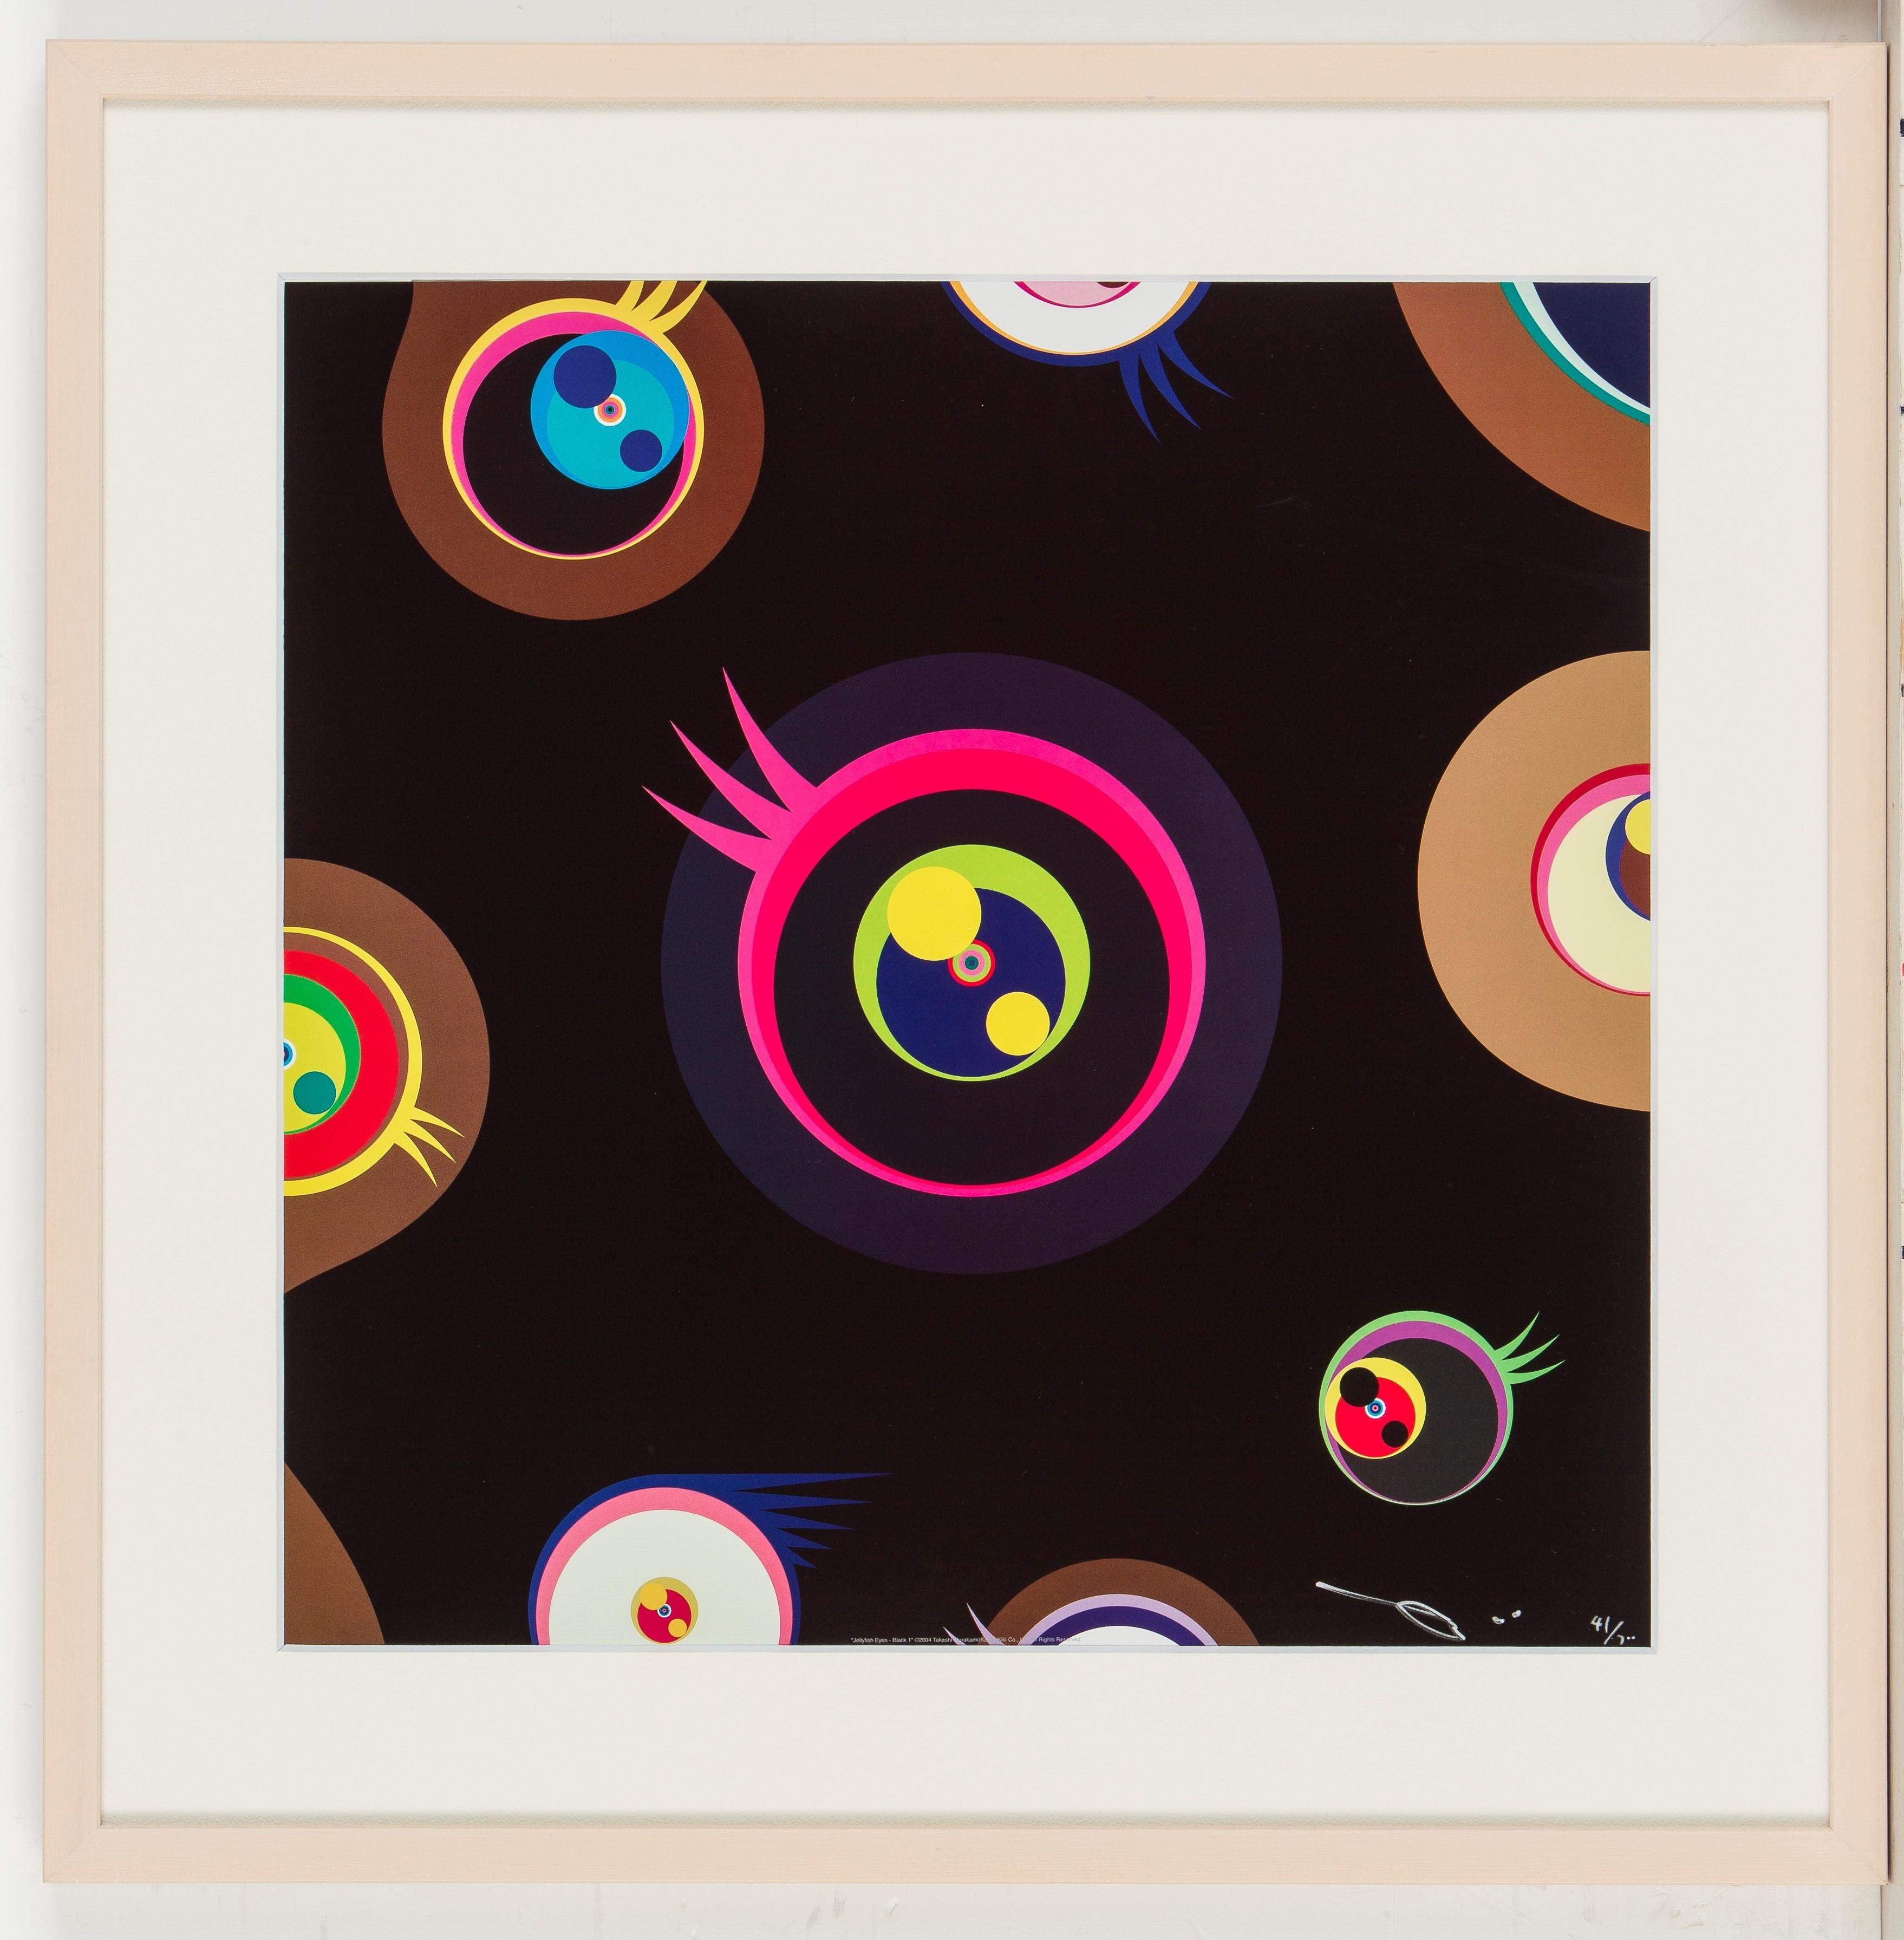 Quallenaugen - Schwarz 1 von Takashi Murakami (2004)
Offsetdruck, nummeriert und signiert von der Künstlerin
19 ¹¹/₁₆ × 19 ¹¹/₁₆ in
50 × 50 cm
Ausgabe  41/300

Takashi Murakami ist vor allem für seine zeitgenössische Kombination aus bildender Kunst